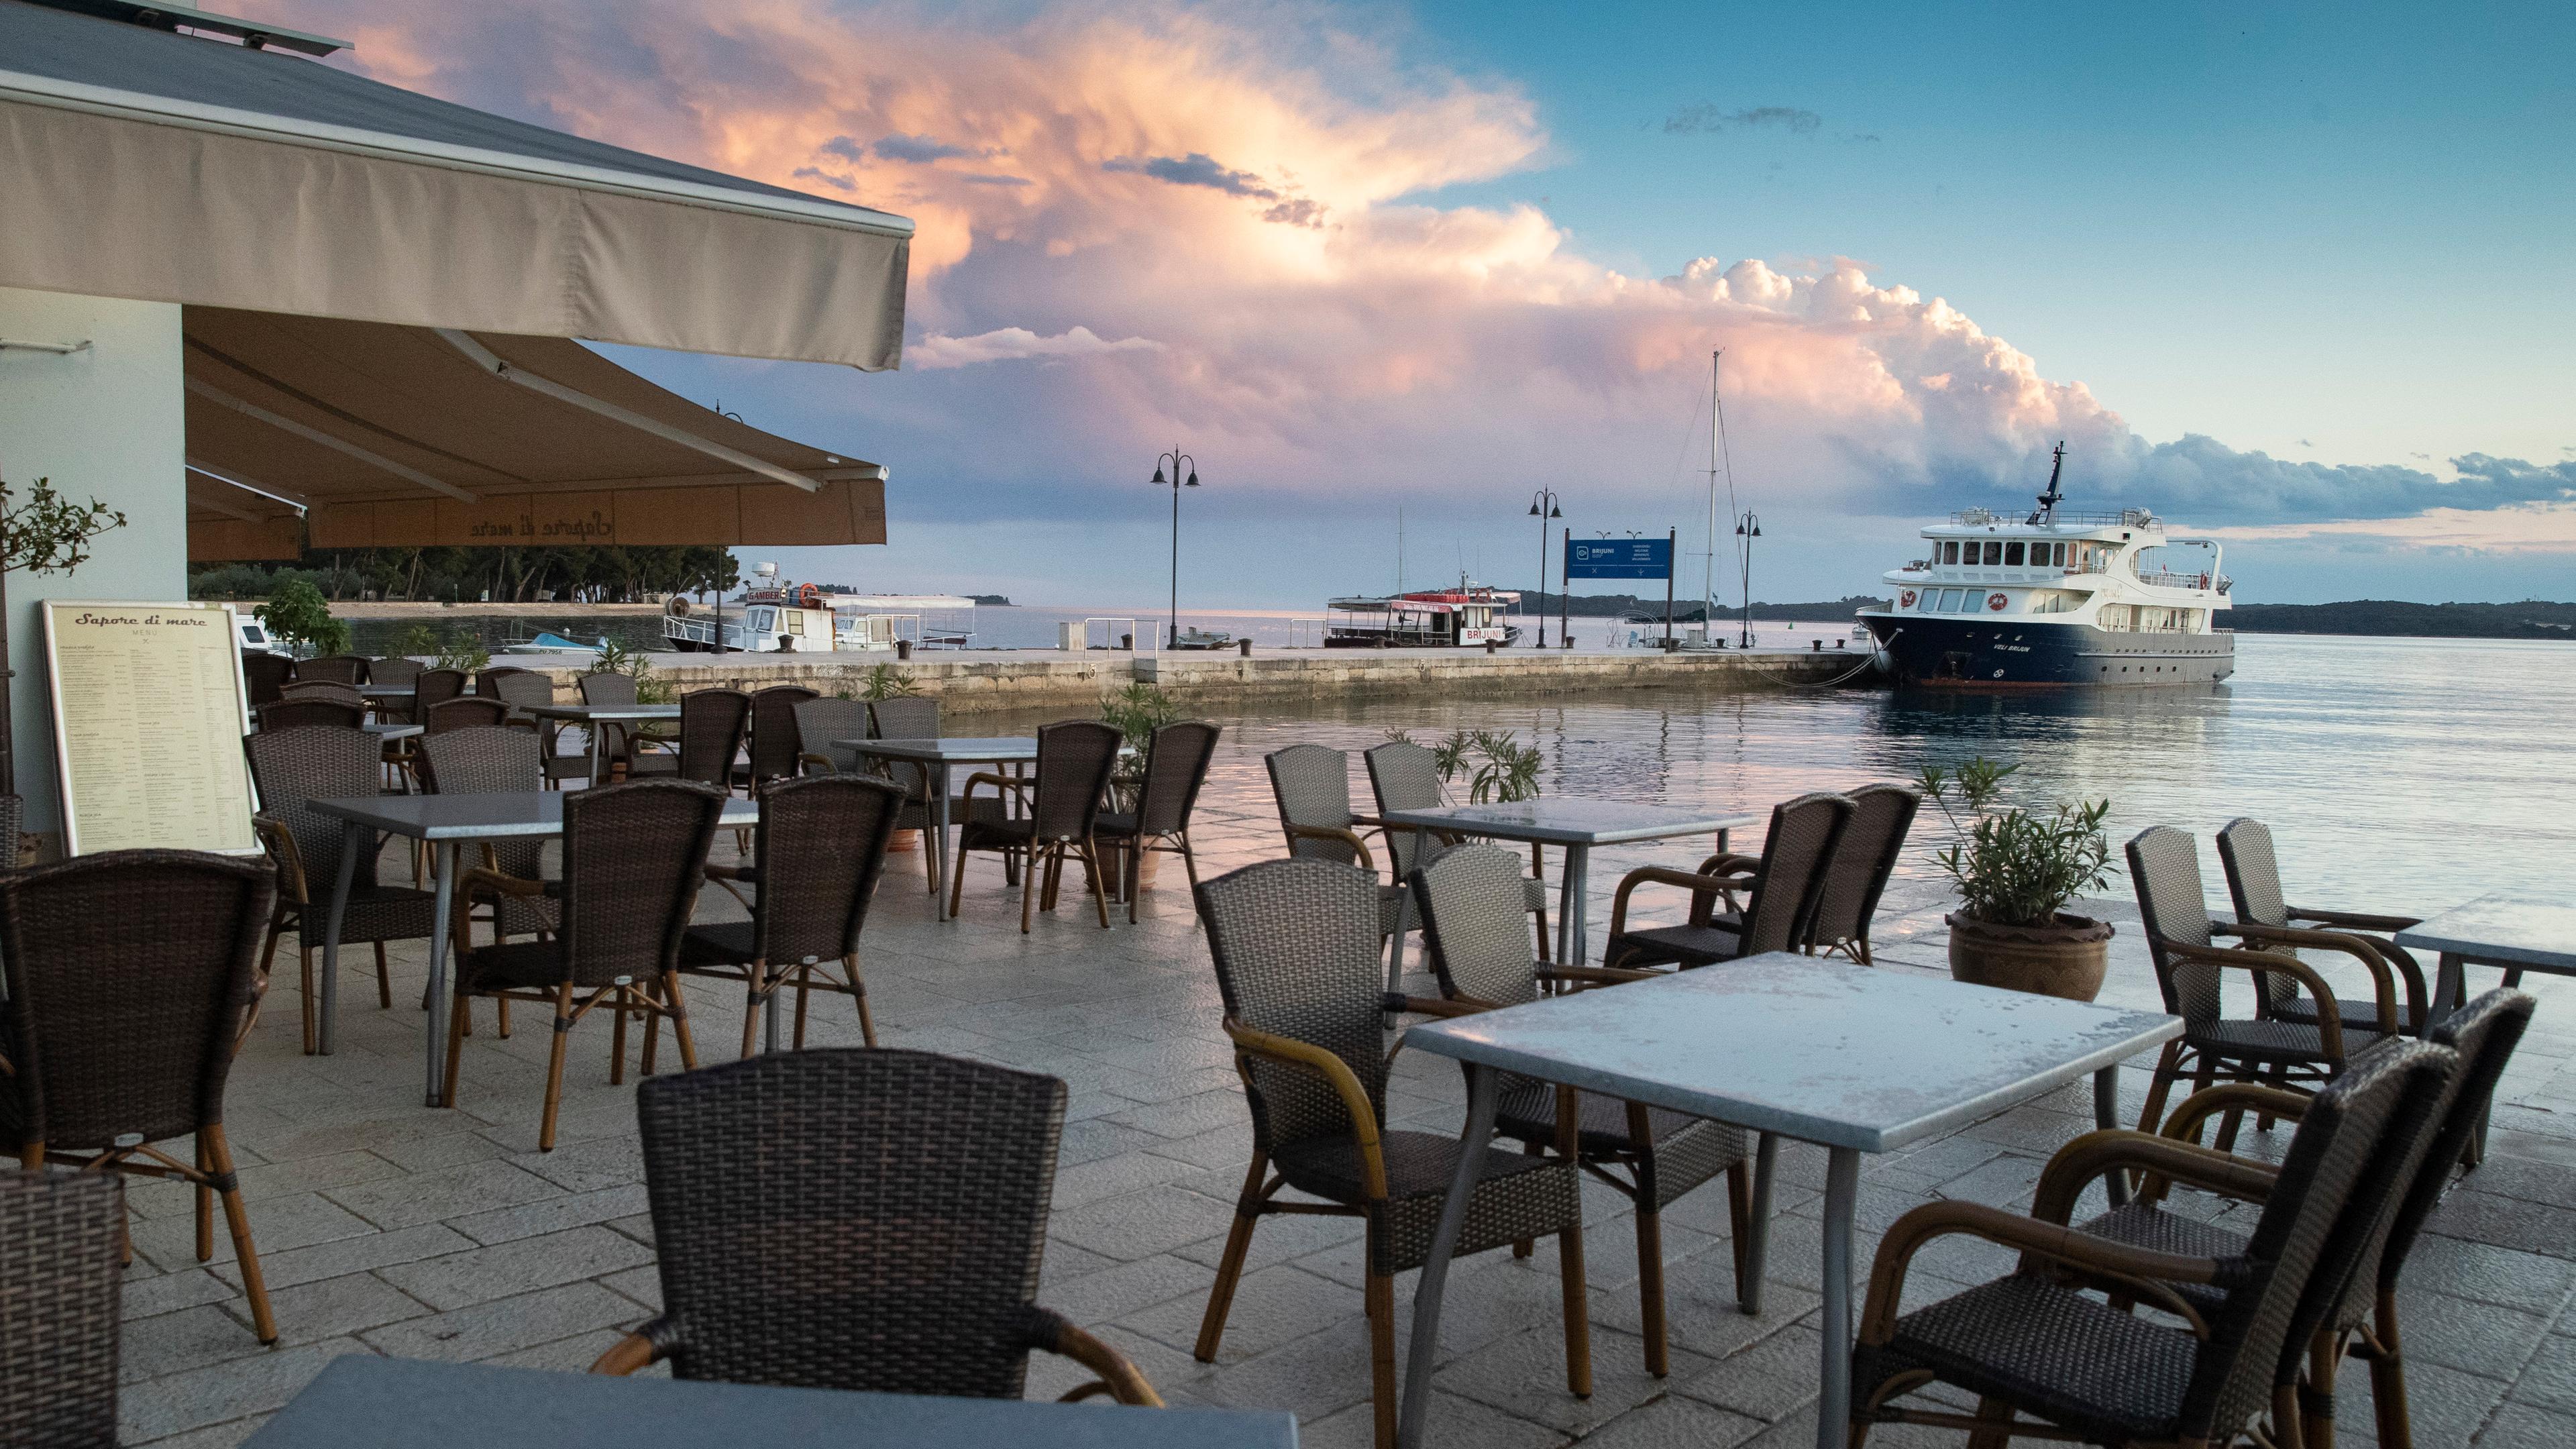 Kroatien, Fazana: Die Tische in den Cafés und Restaurants im Hafen von Fazana sind nicht besetzt. Archivbild